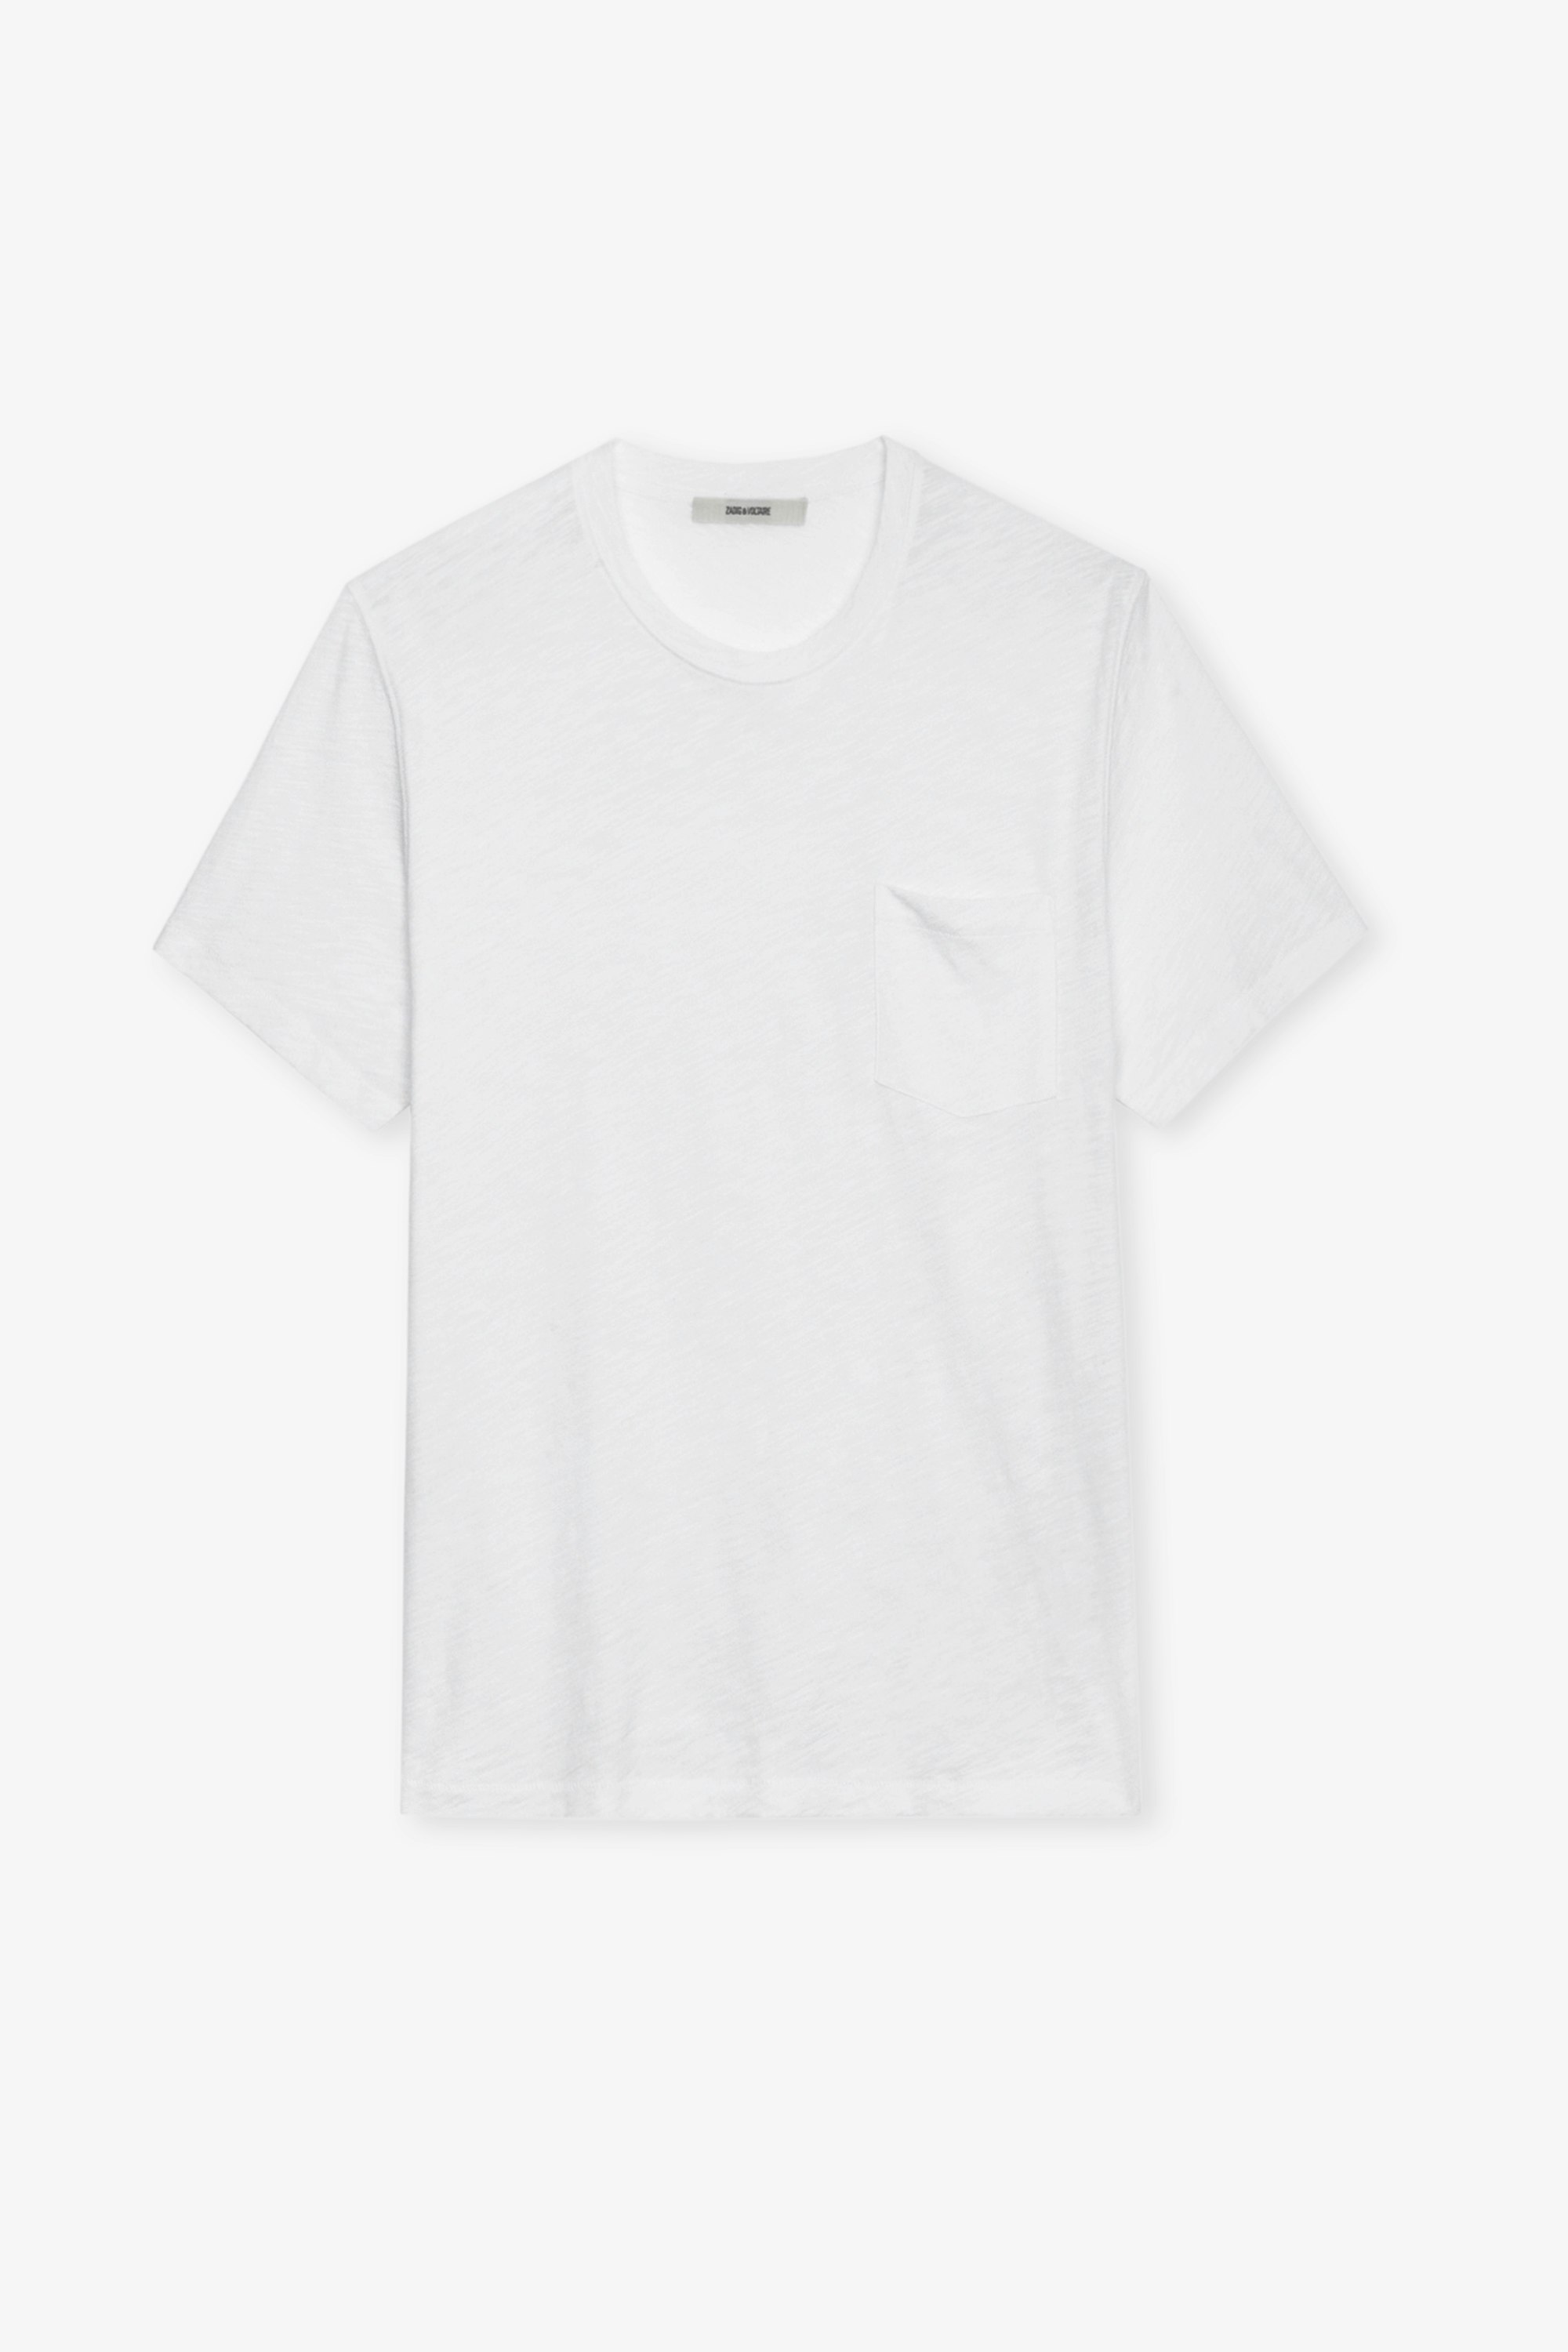 Camiseta Stockholm Flamme - Camiseta blanca de algodón jaspeado para hombre con bolsillo en el pecho y estampado Skull en la espalda.